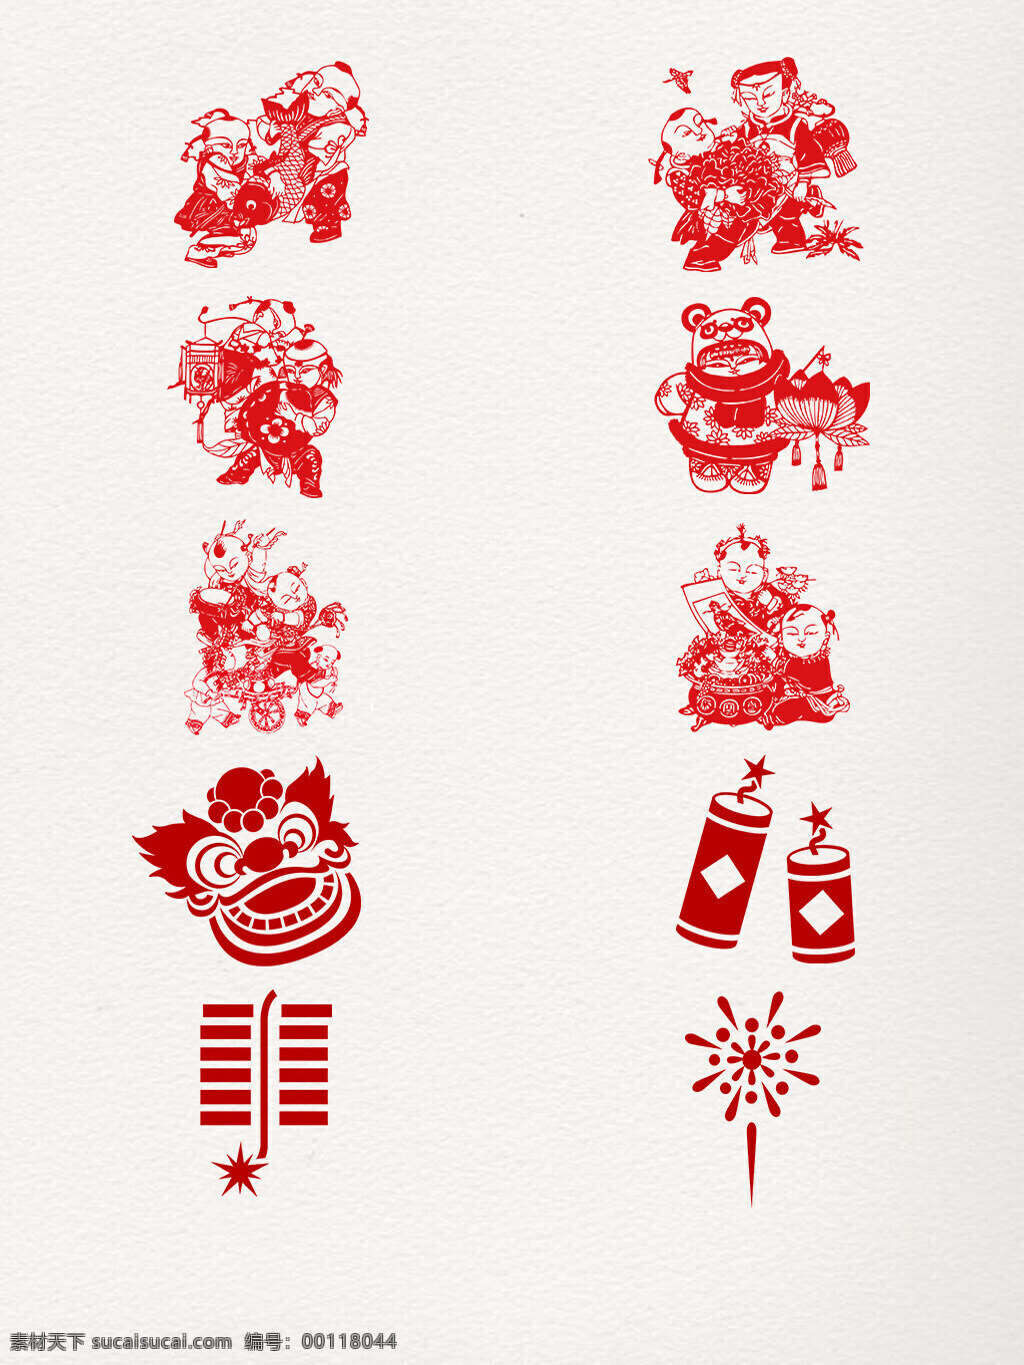 剪纸 风 新年 喜庆 元素 传统 打鼓 放鞭炮 福娃 红色 狮子头 贴春联 烟花 中国风